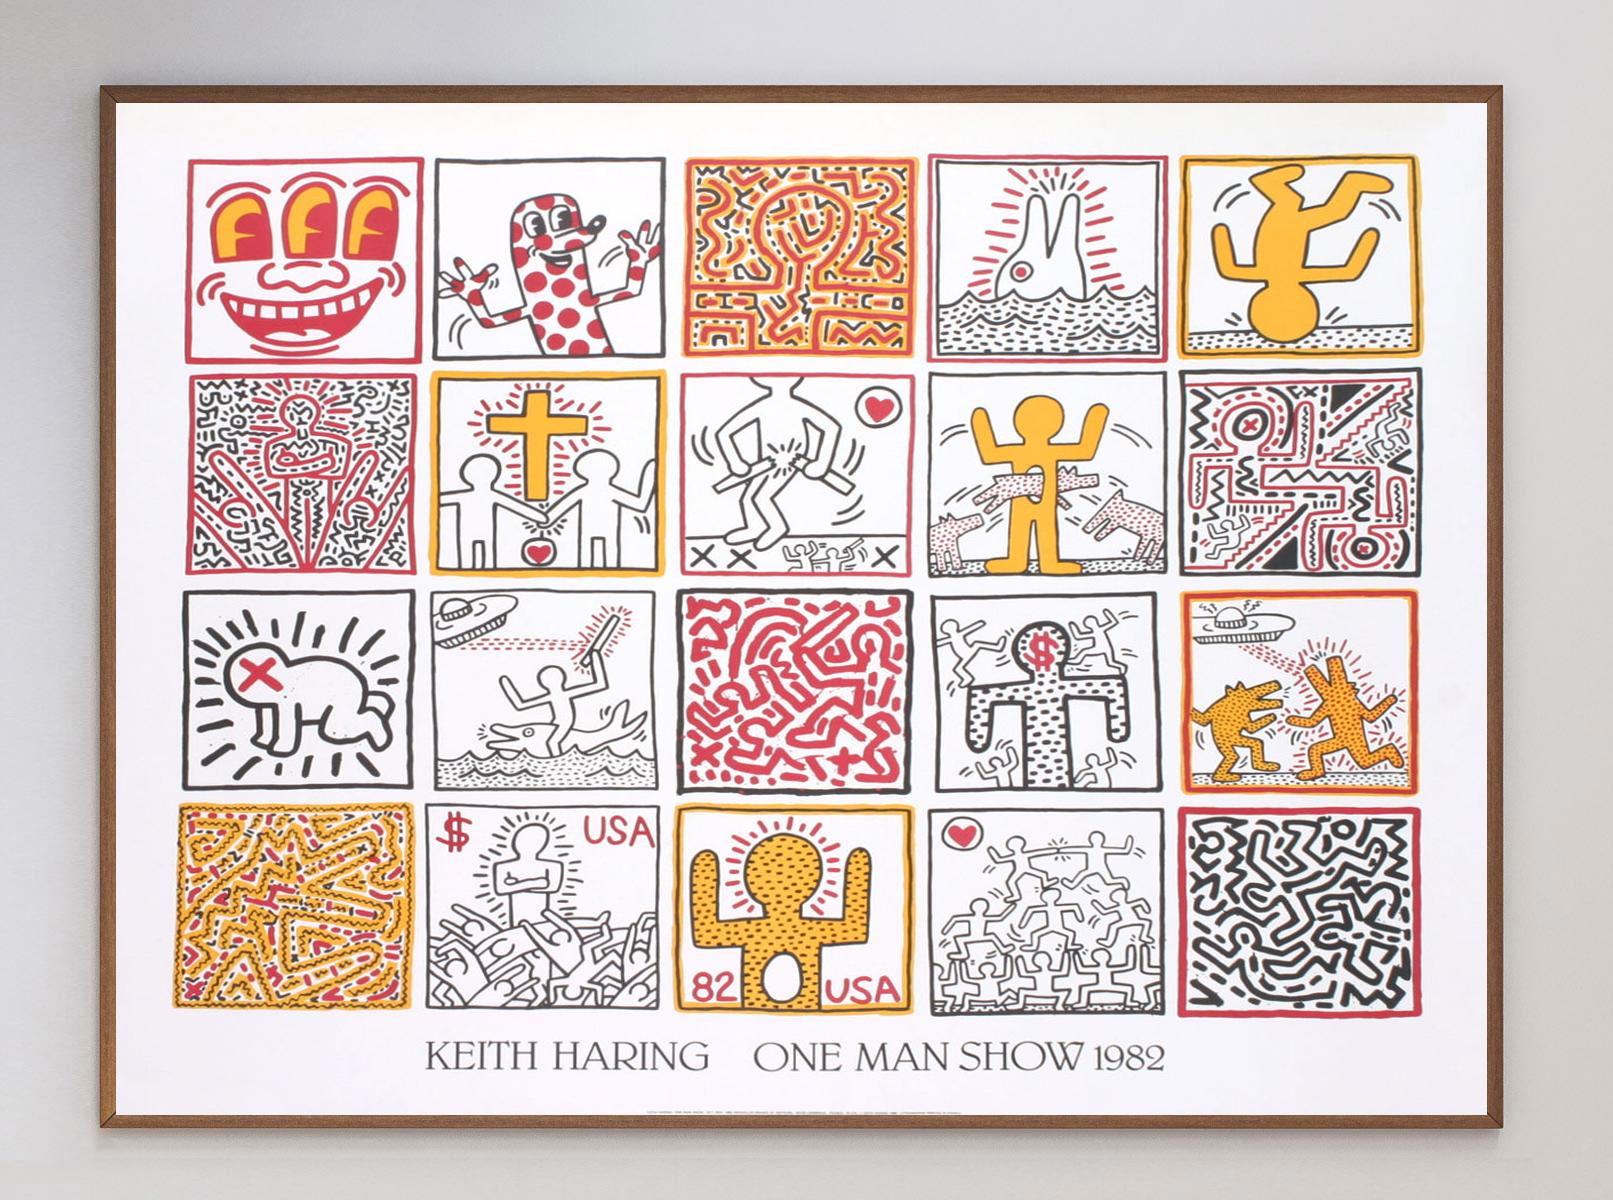 Belle lithographie imprimée par Nouvelles Images en 1986, représentant 20 œuvres de Keith Haring pour le 